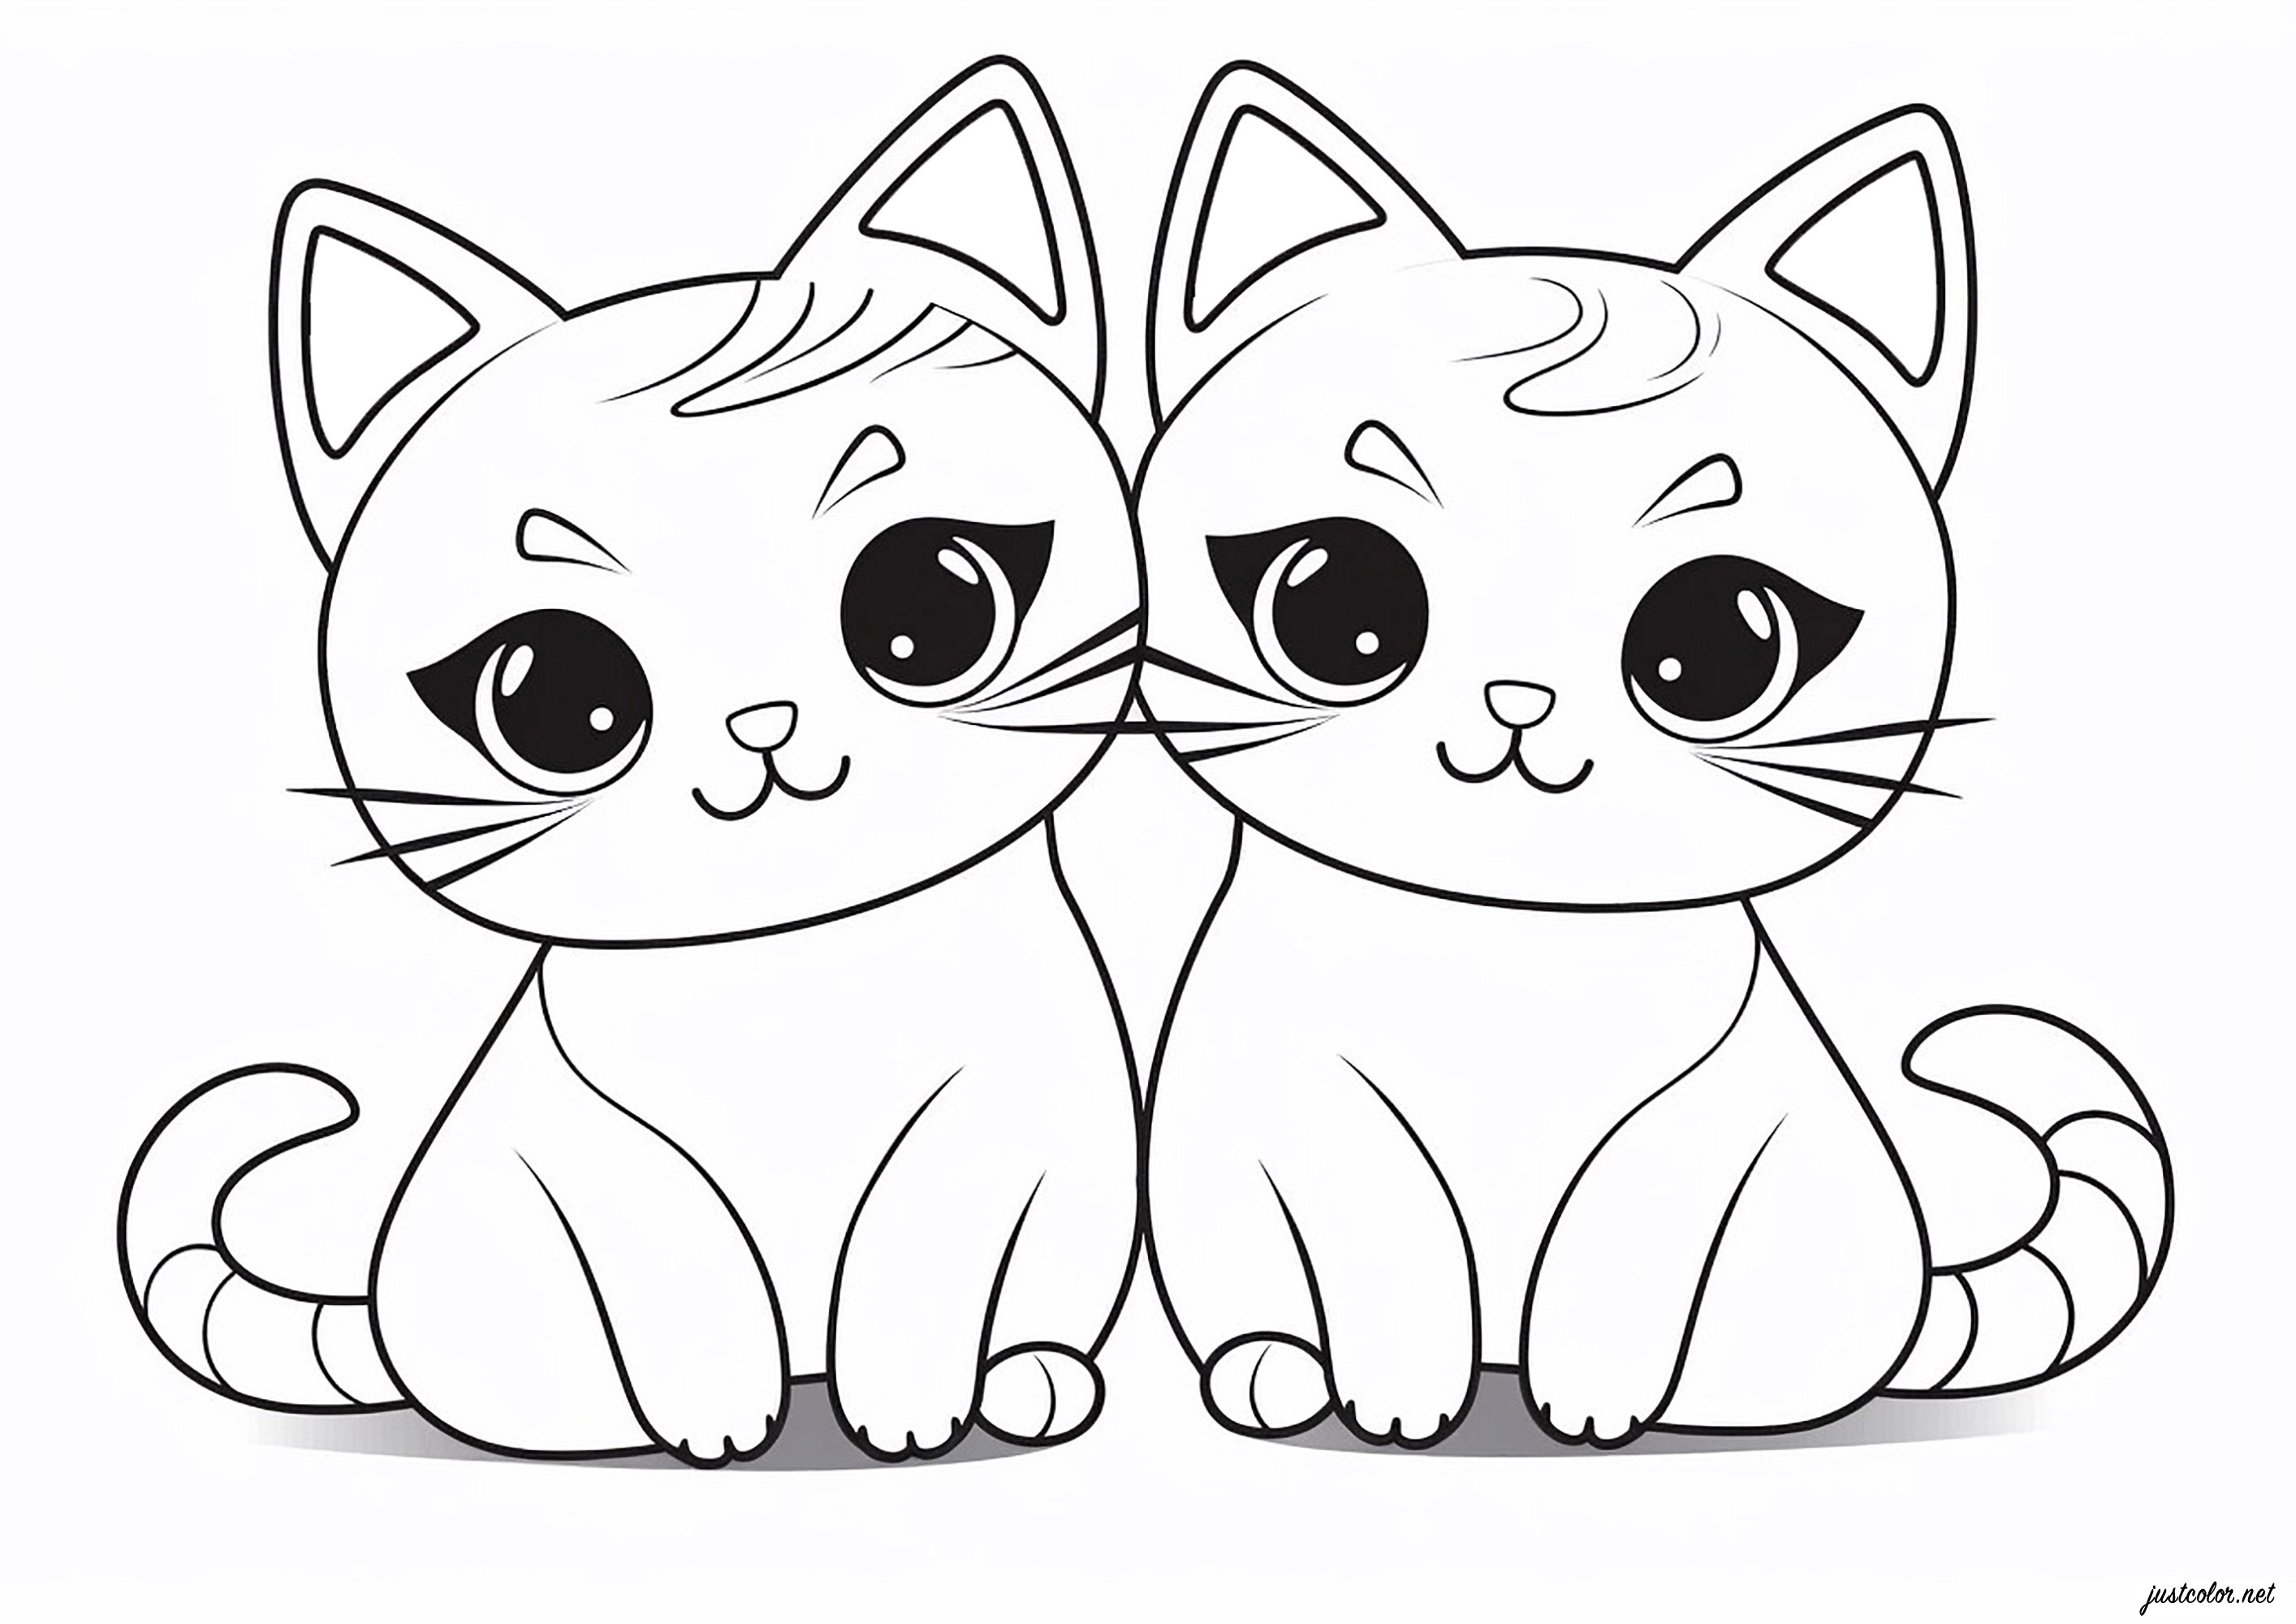 Deux chats dessinés au style Kawaii, très simplement